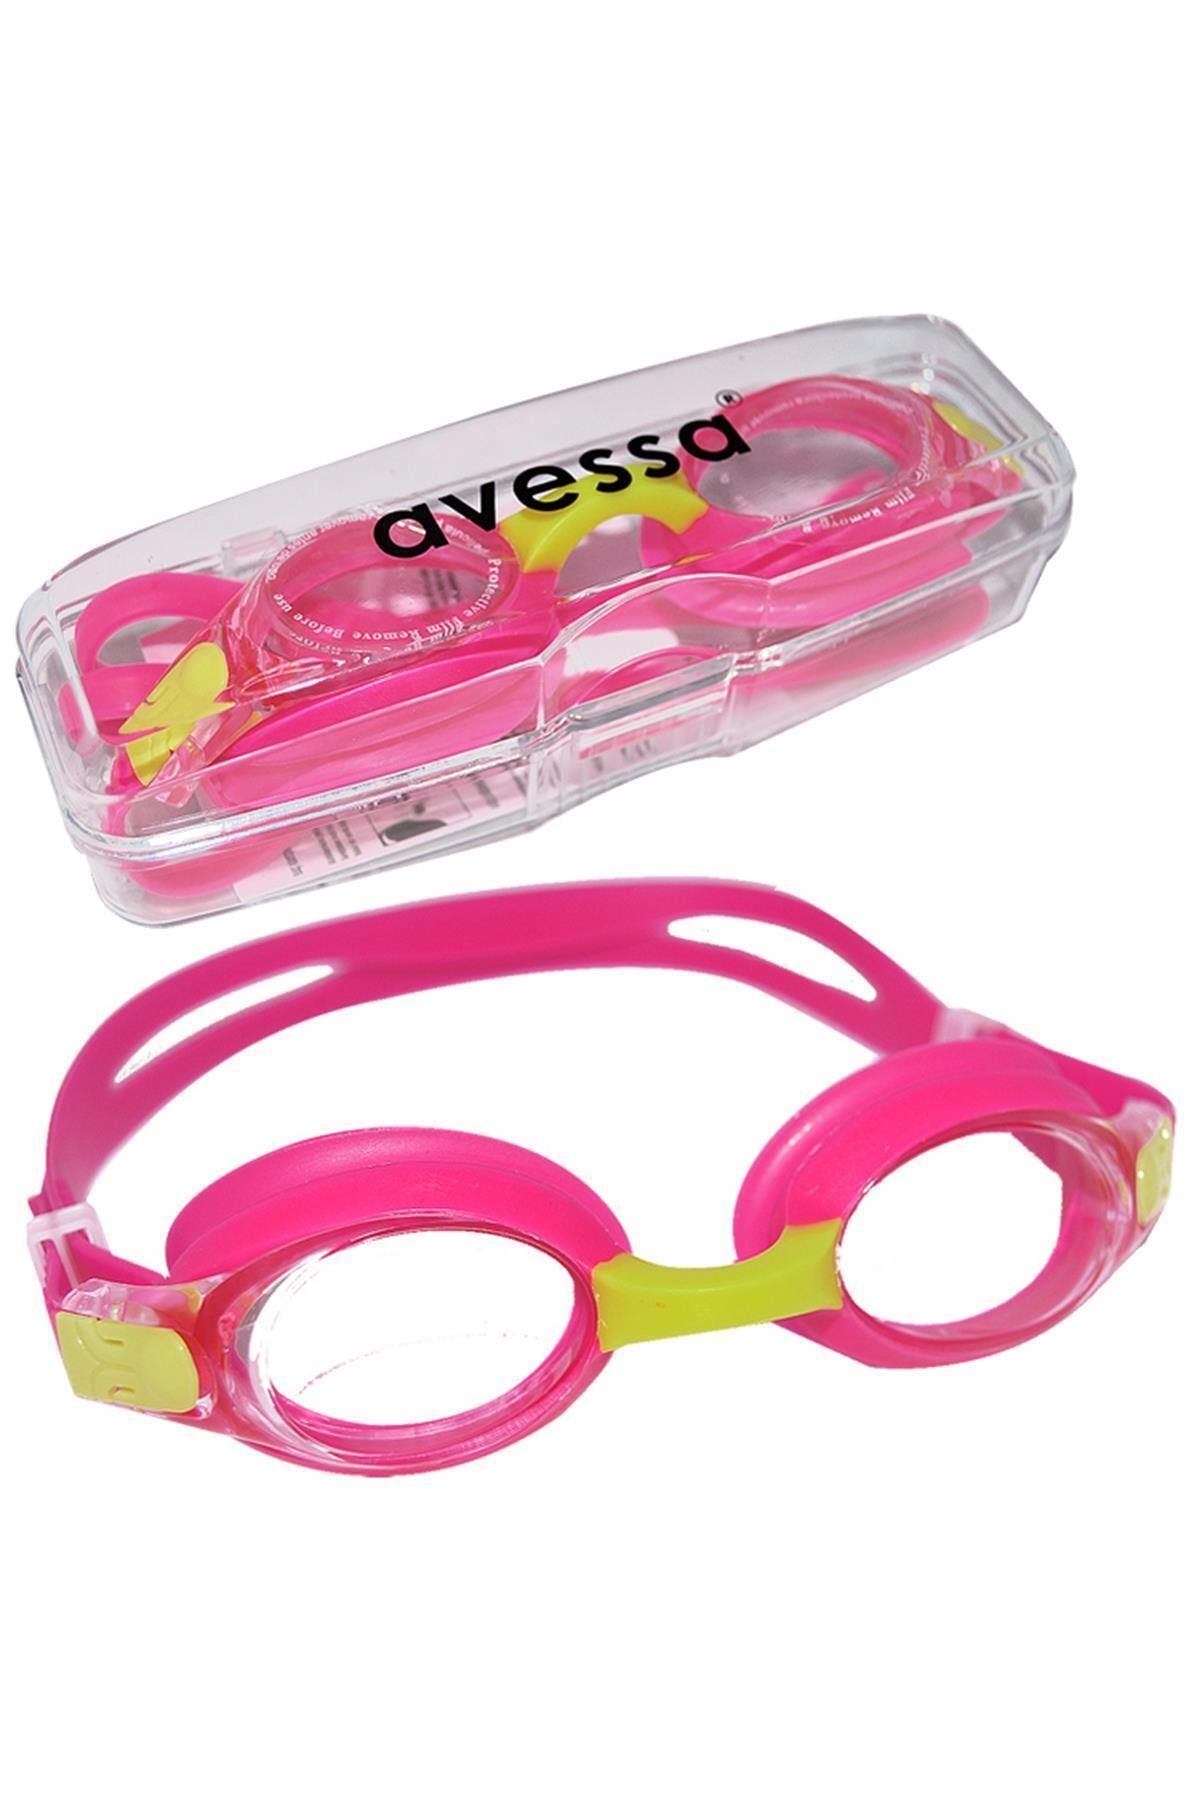 Avessa Çocuk Yüzücü Gözlüğü Pembe 2670